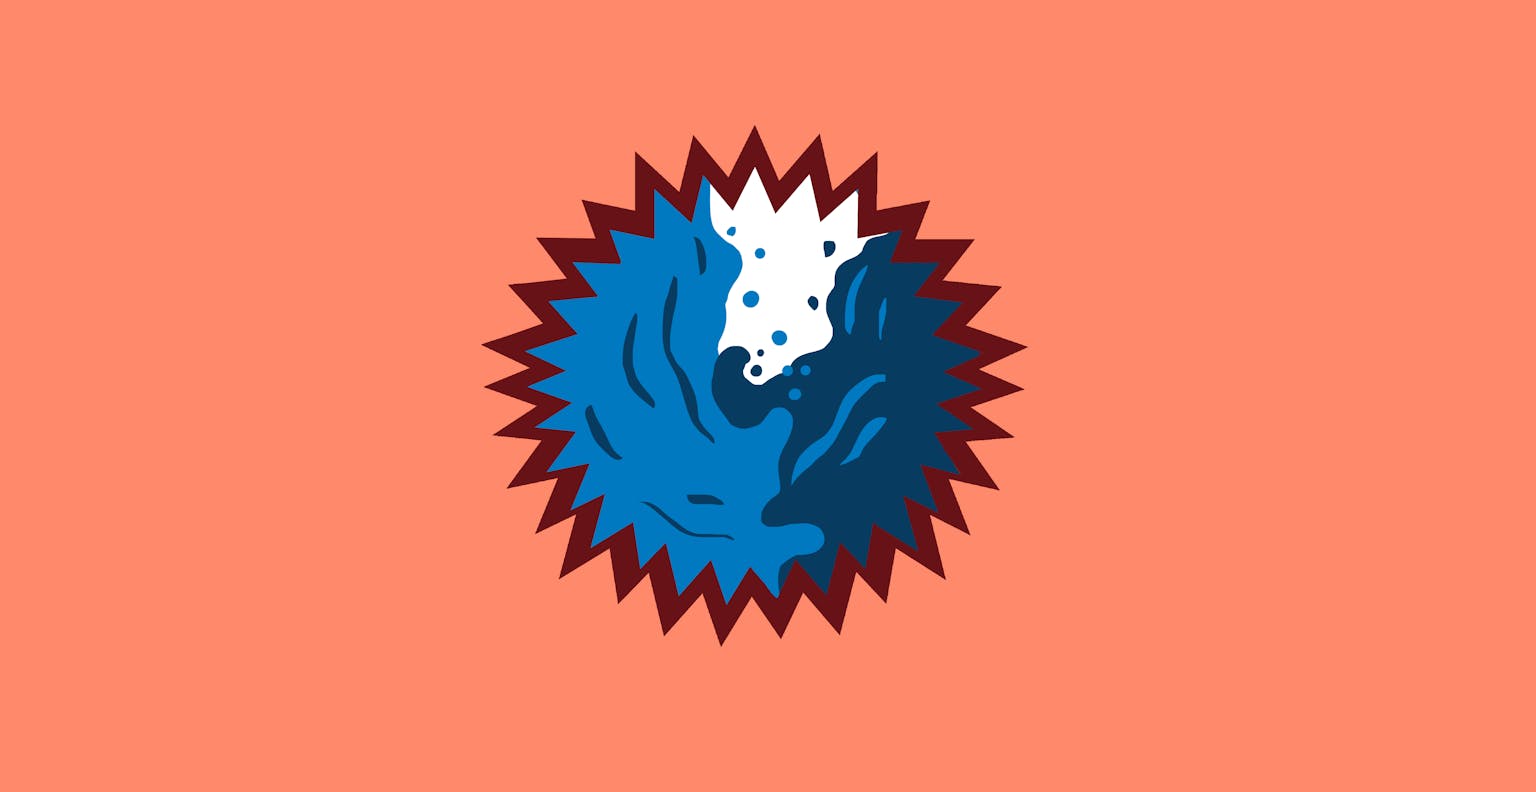 Een stervormig logo met daarin een illustratie van verschillende kleuren water die samenkomen.